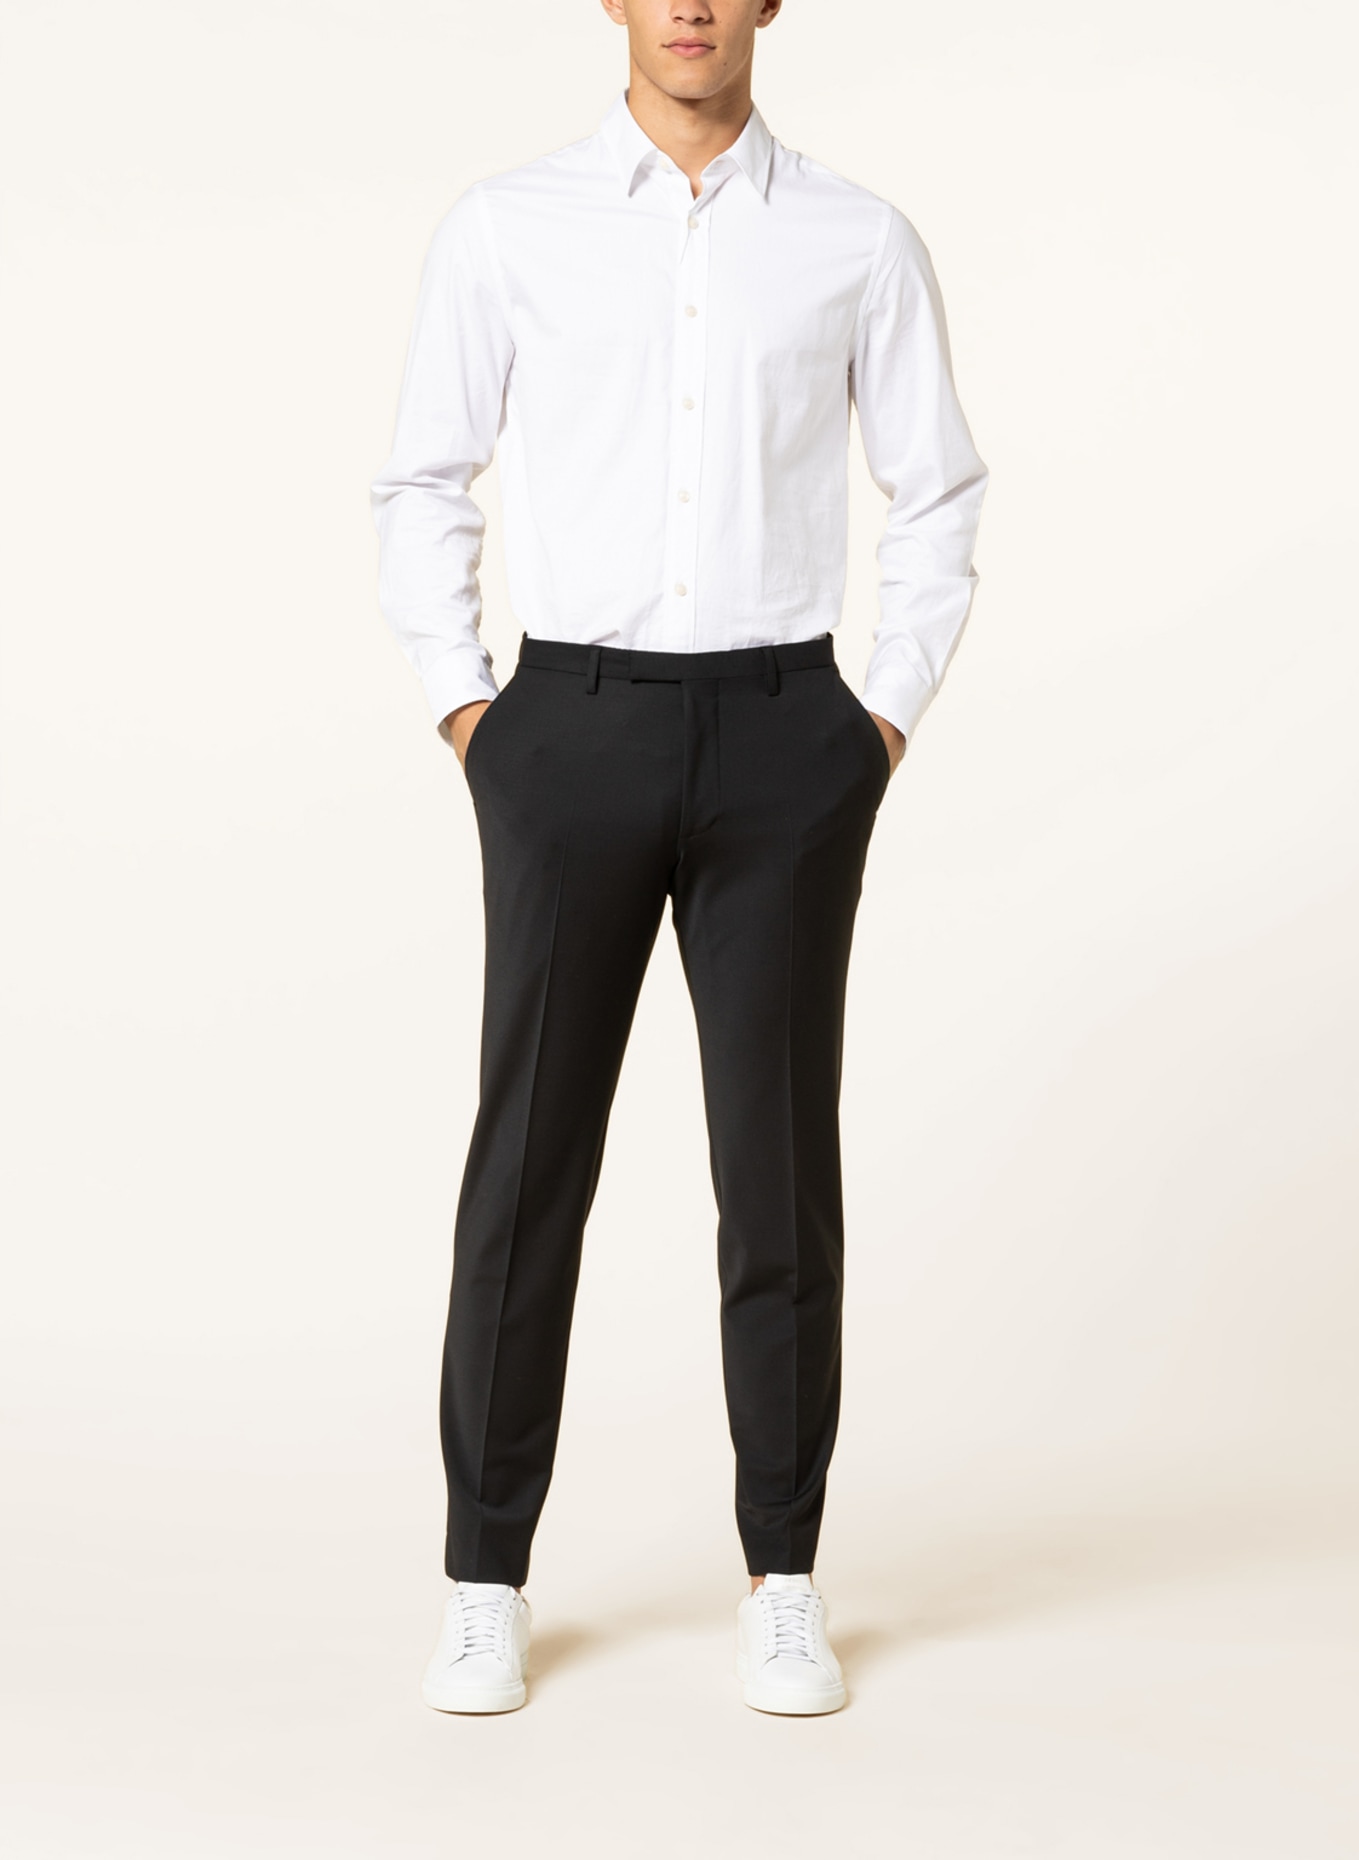 CINQUE Suit trousers CICASTELLO super slim fit, Color: 99 (Image 3)